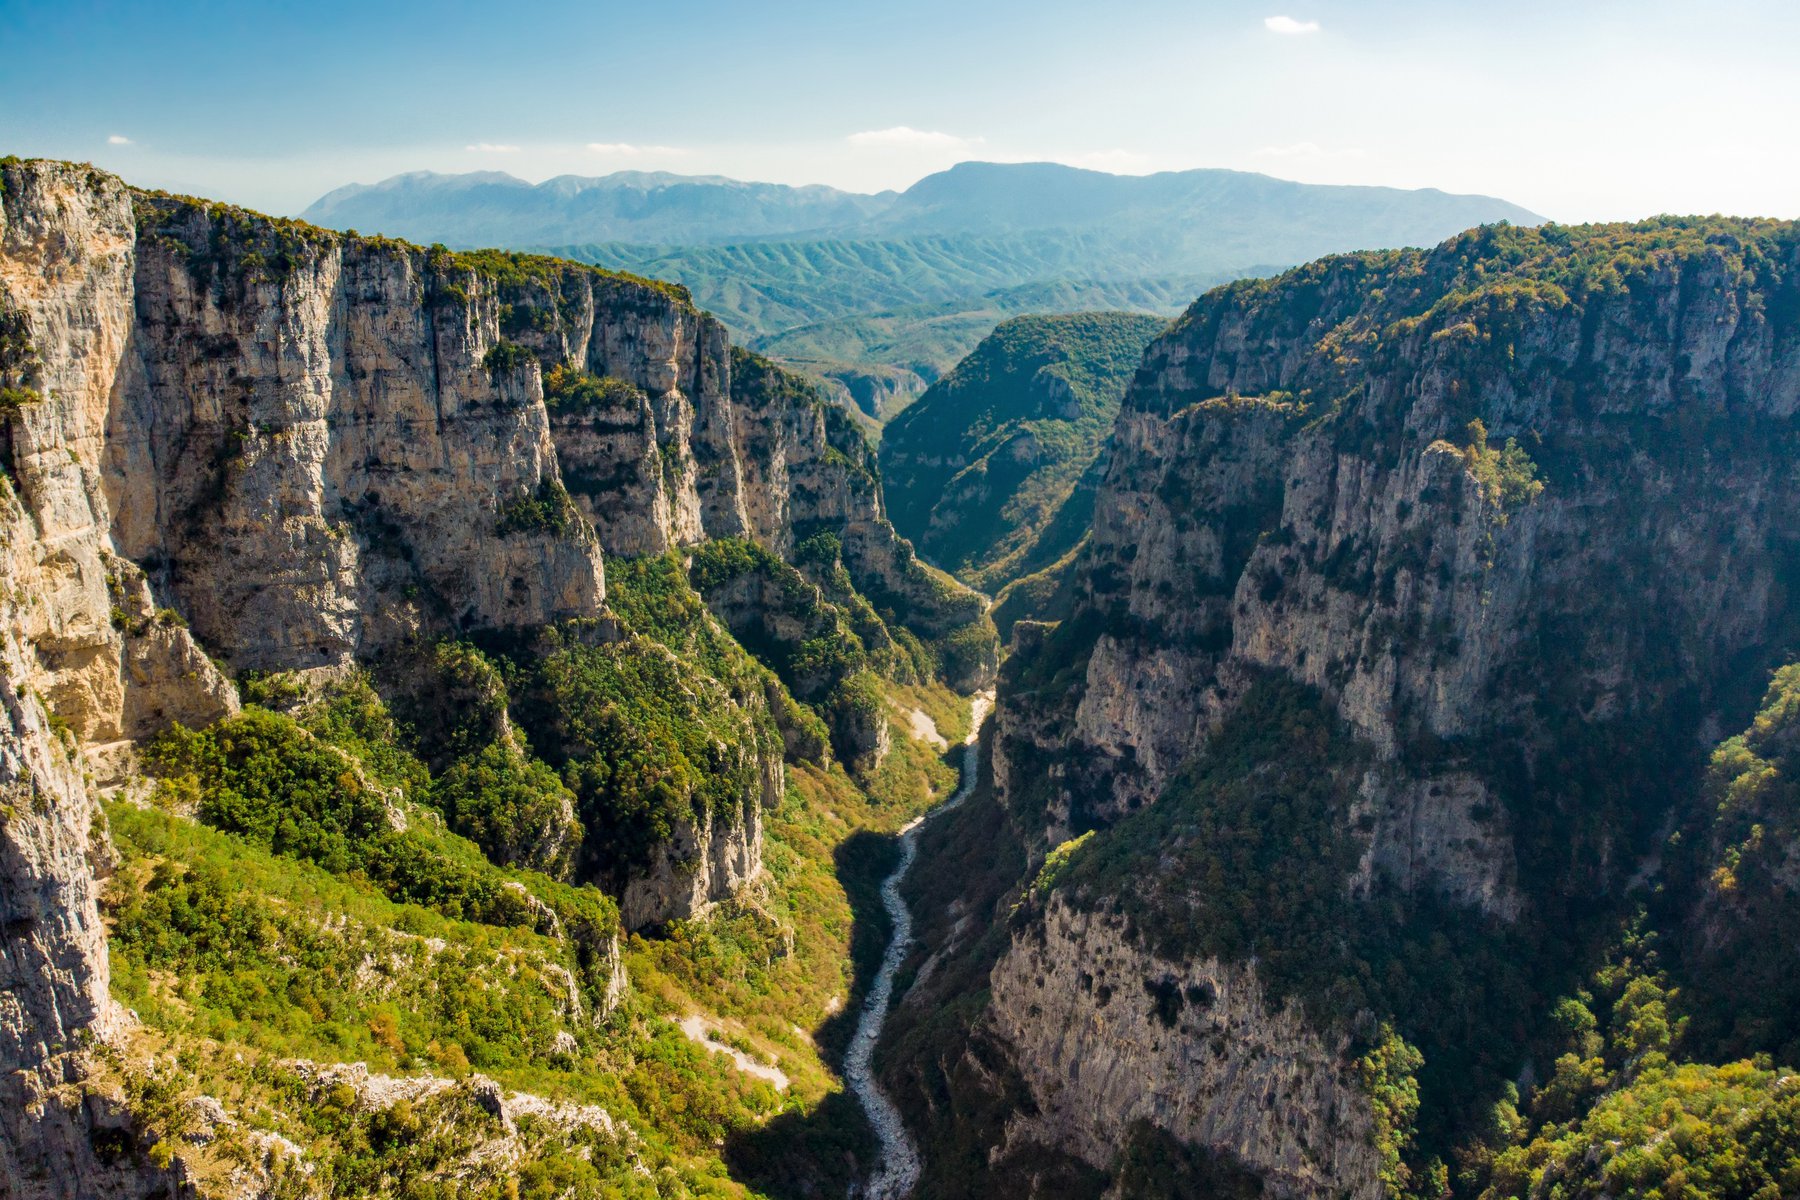 Du vandrar vid den mäktiga Vikosravinen i Greklands vildaste bergsområde